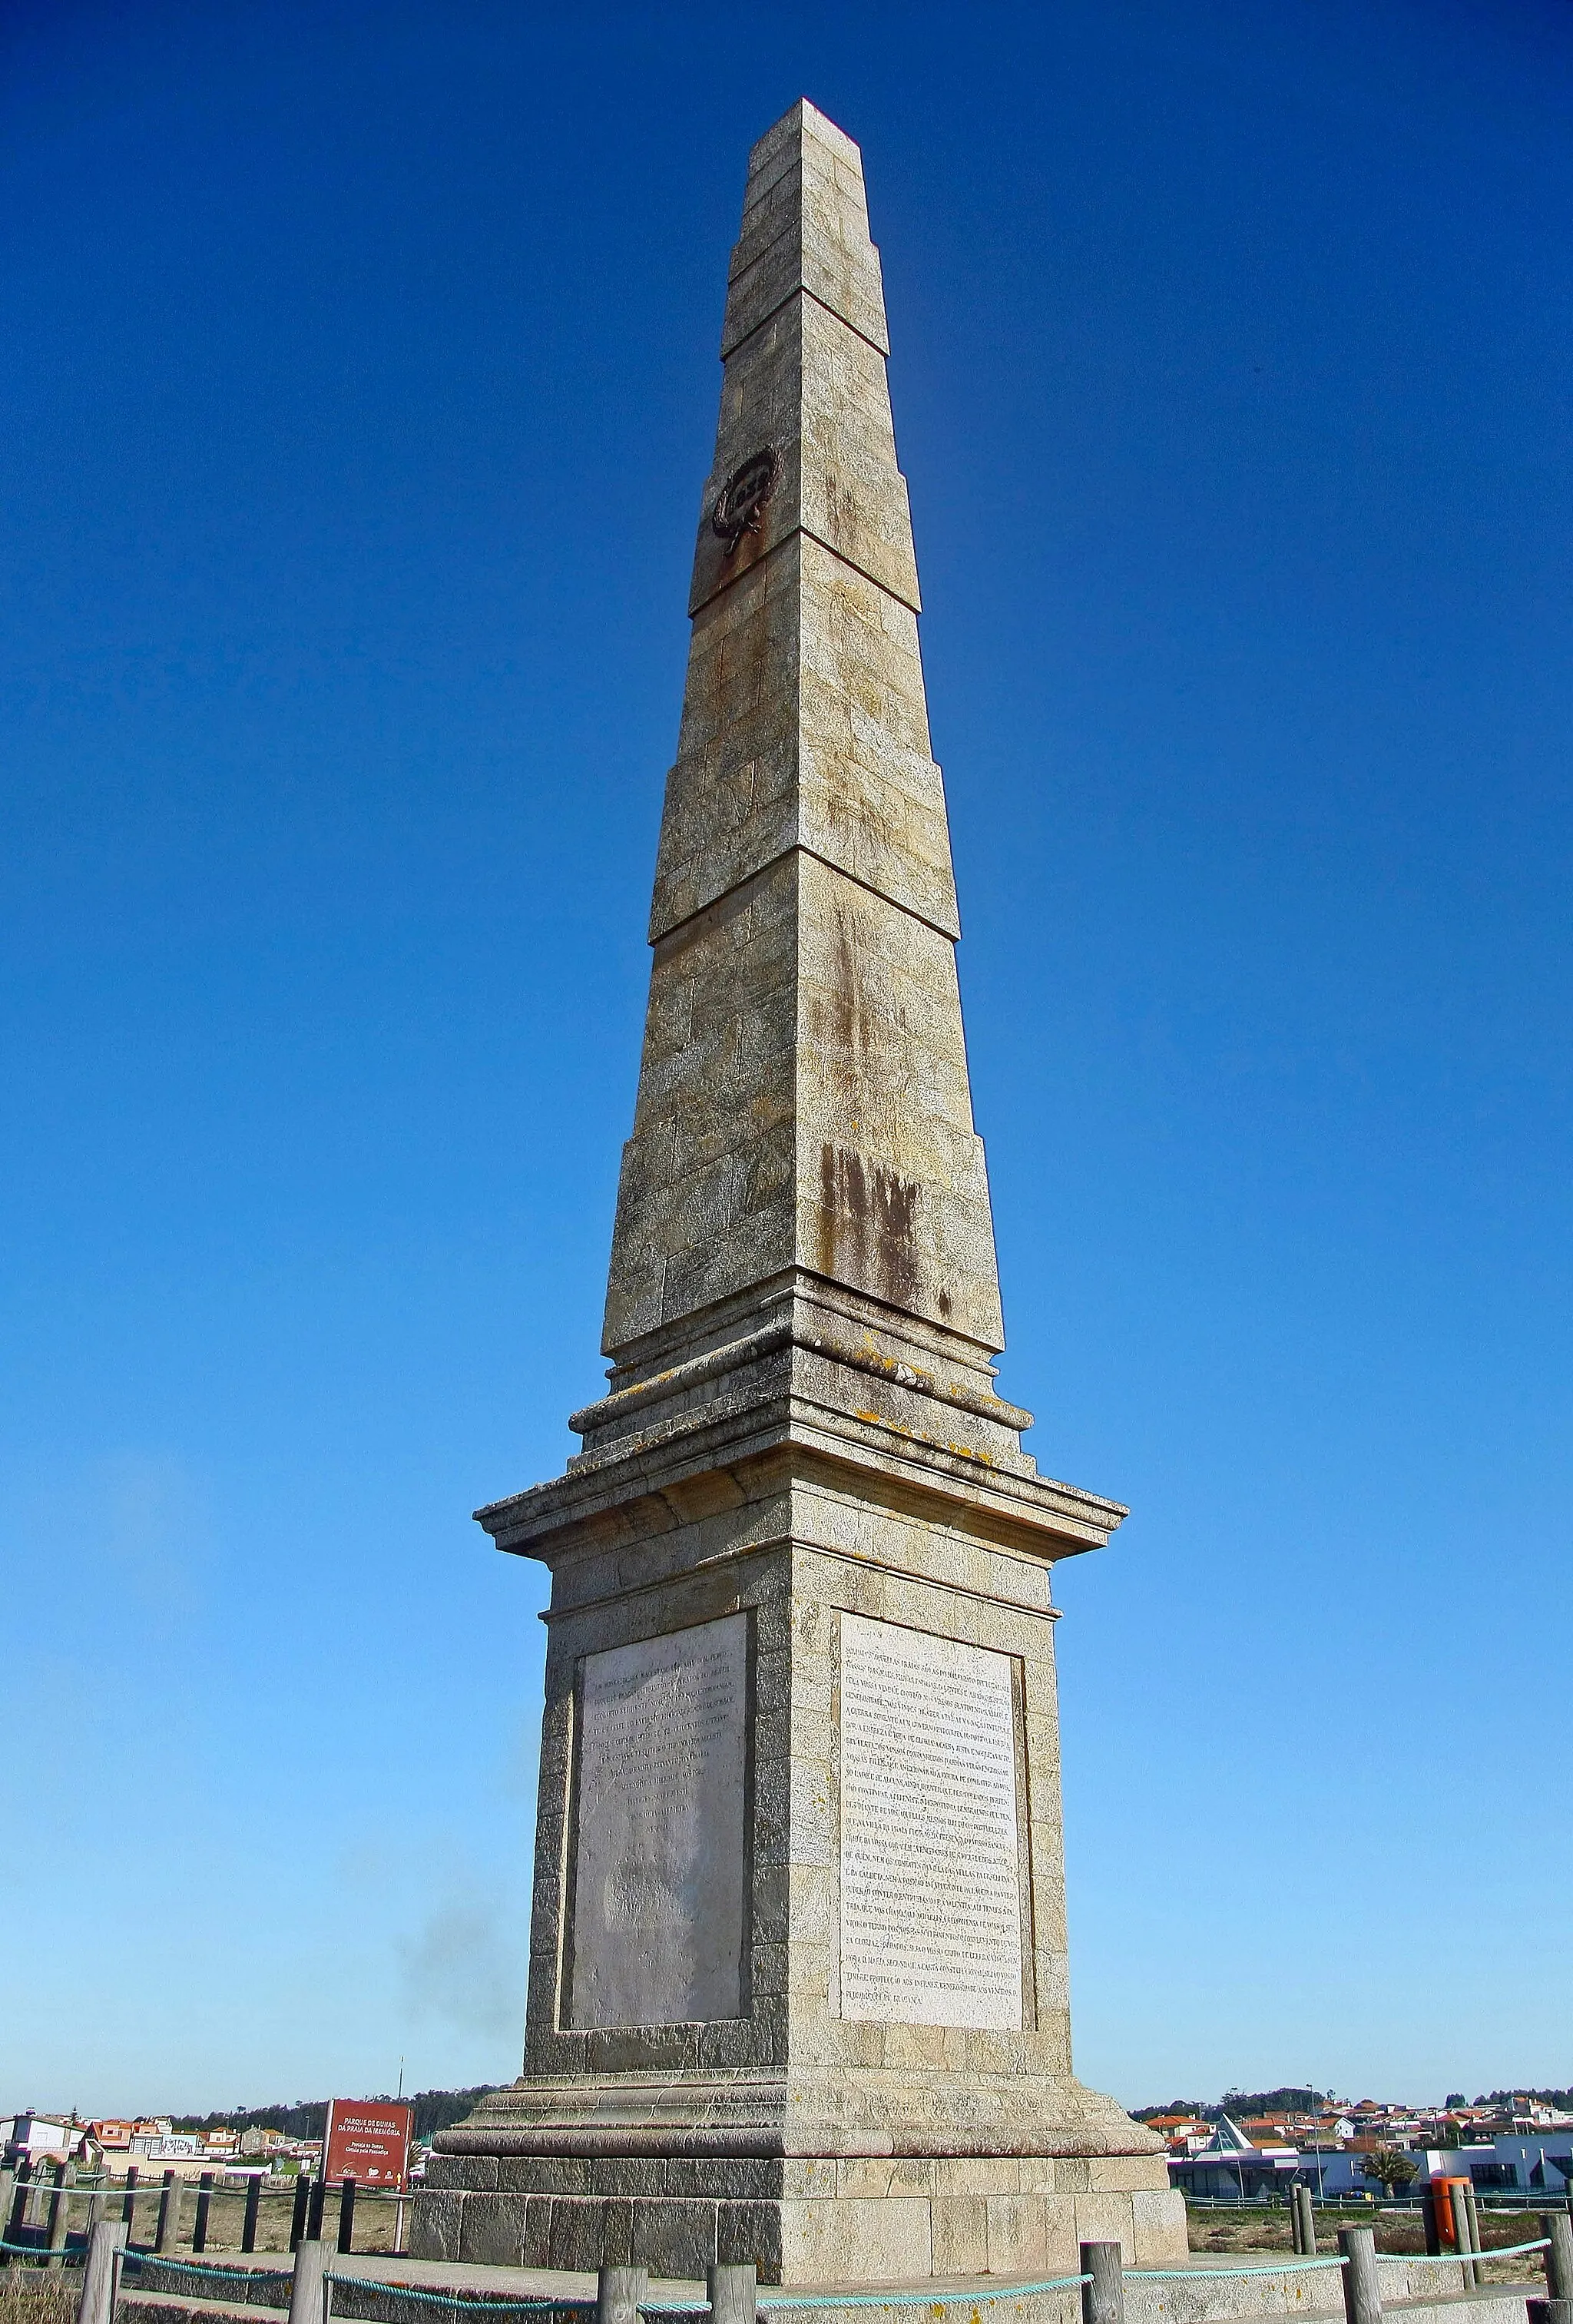 Photo showing: O Obelisco da Praia da Memória ou Obelisco da Memória é um obelisco em Matosinhos, Portugal, cuja construção foi efetuada em memória do desembarque de 8 de julho de 1832, ocorrido na praia junto a Arnosa do Pampelido, entre as freguesias de Perafita e de Lavra do concelho de Matosinhos.
O desembarque foi o da esquadra comandada por D. Pedro IV composta por um exército de 7500 homens, com o intuito de instaurar no país um regime moderno e liberal. A escolha do local apanhou de surpresa o exército absolutista uma vez que este esperava um ataque a Lisboa, pelo que a defesa do Norte tinha sido desguarnecida. Após o desembarque o chamado “Exército Libertador” seguiu para o Porto onde entrou se problemas no dia 9 de julho, e onde resistiu heroicamente durante um ano durante o “Cerco do Porto”.
A assinalar o local do desembarque foi erguido, por subscrição pública, um obelisco destinado a lembrar este acontecimento. O lançamento da primeira pedra foi em 1 de dezembro de 1840, no dia em que se comemoravam 200 anos da restauração da independência portuguesa. Só 24 anos depois ficou concluído o monumento, sendo classificado como monumento nacional em 1880.
O obelisco é construído em granito e inclui referências à data do desembarque em duas coroas metálicas colocadas no topo. Os quatro painéis calcários na base referem a iniciativa da construção do monumento, os nomes de alguns dos comandantes do “Exército Libertador” e a proclamação que D. Pedro IV fez aos soldados antes do desembarque.

O obelisco foi restaurado em 2001 por iniciativa da Câmara Municipal de Matosinhos. pt.wikipedia.org/wiki/Obelisco_da_Praia_da_Mem%C3%B3ria